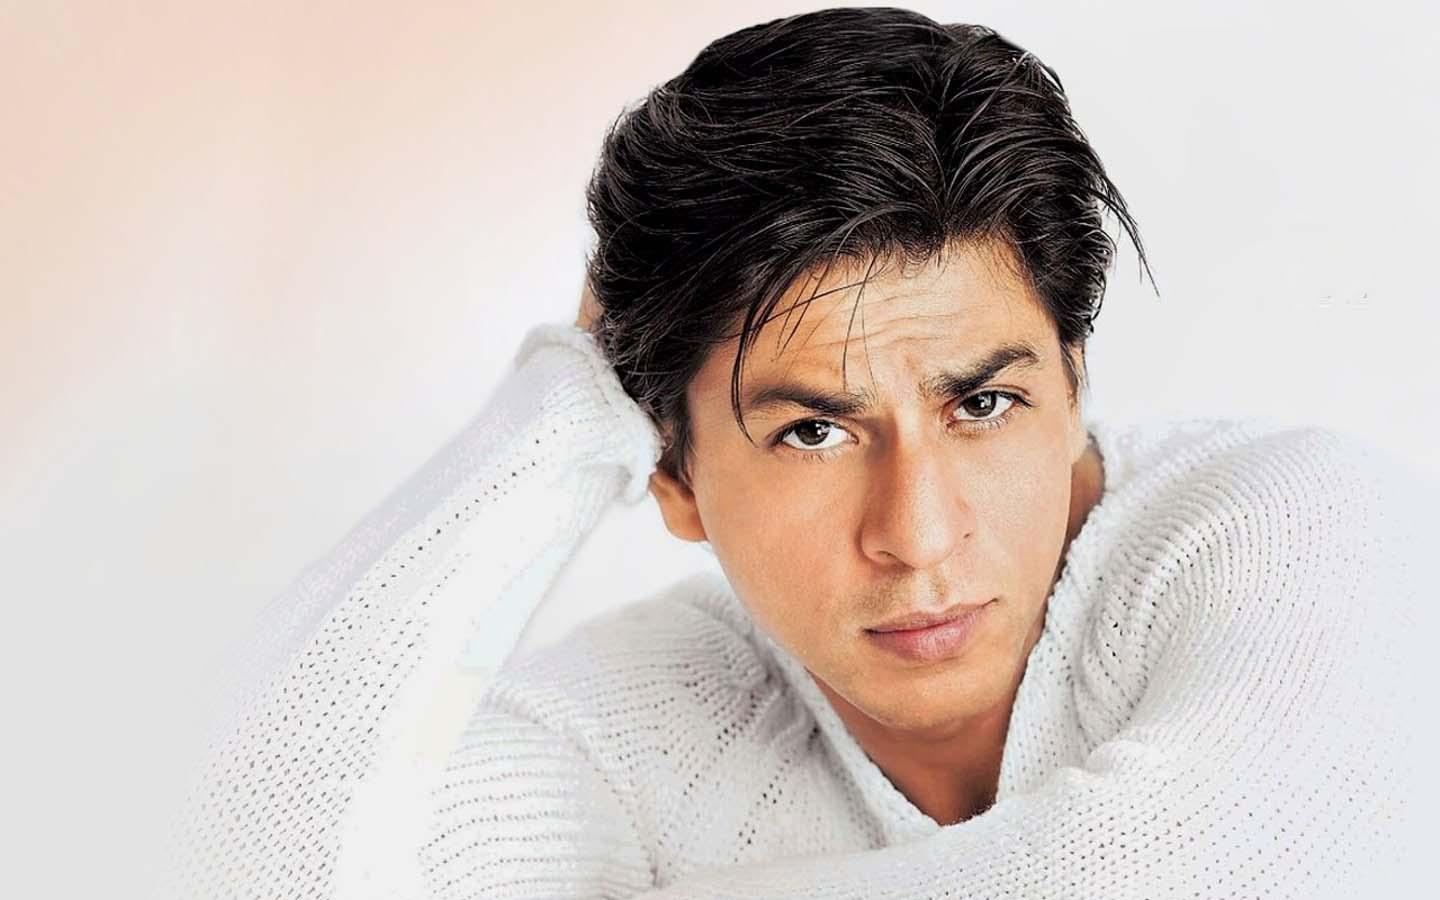 Shah Rukh Khan in white